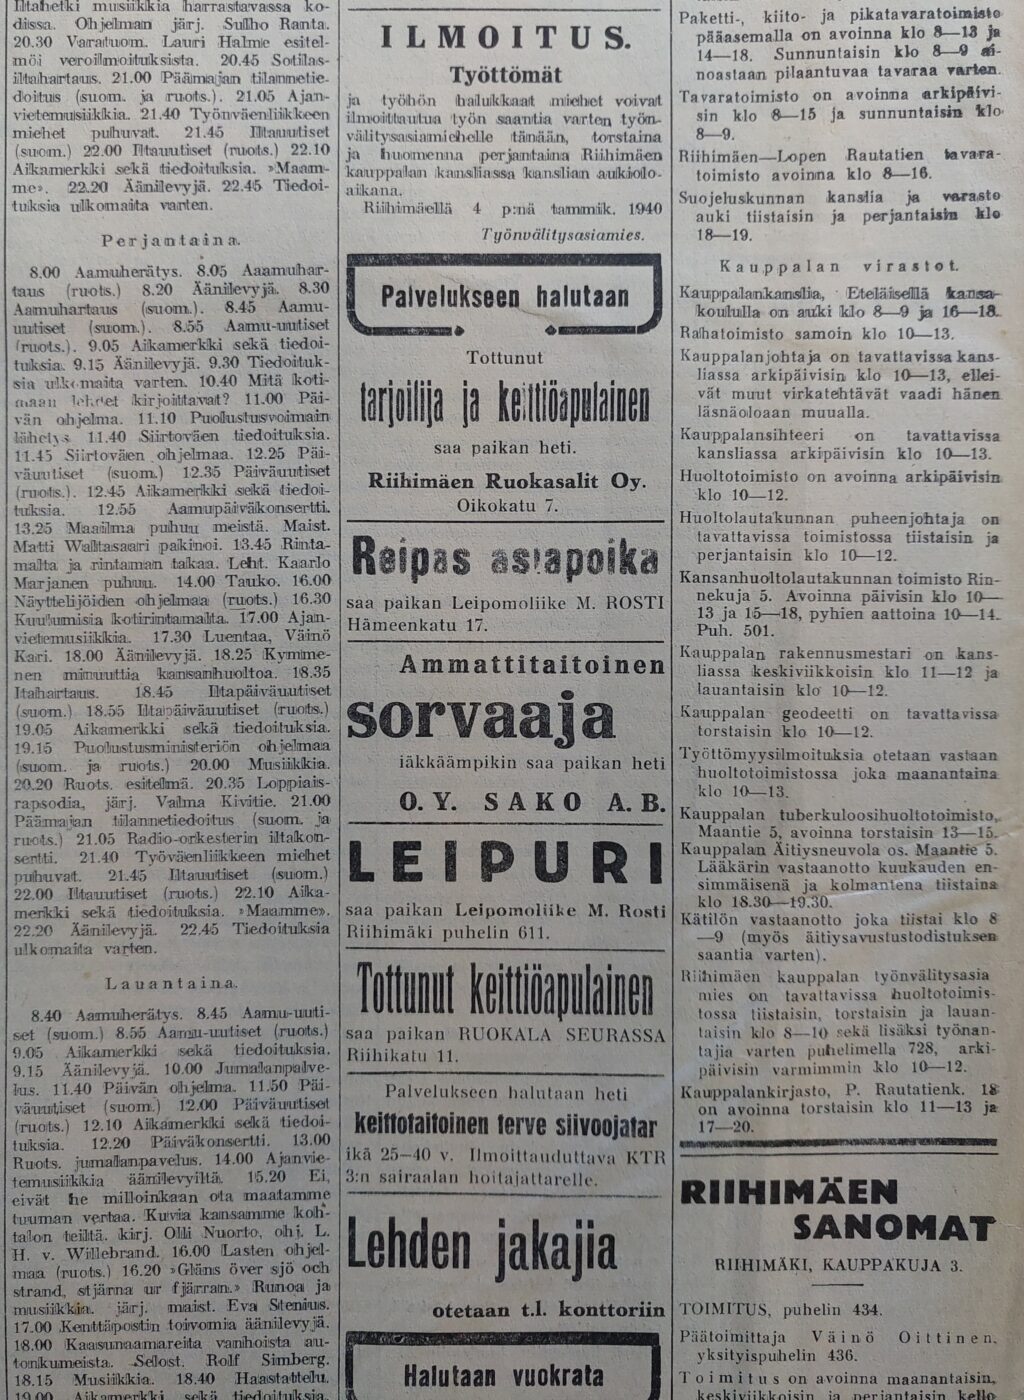 Riihimäen Sanomat 4.1.1940